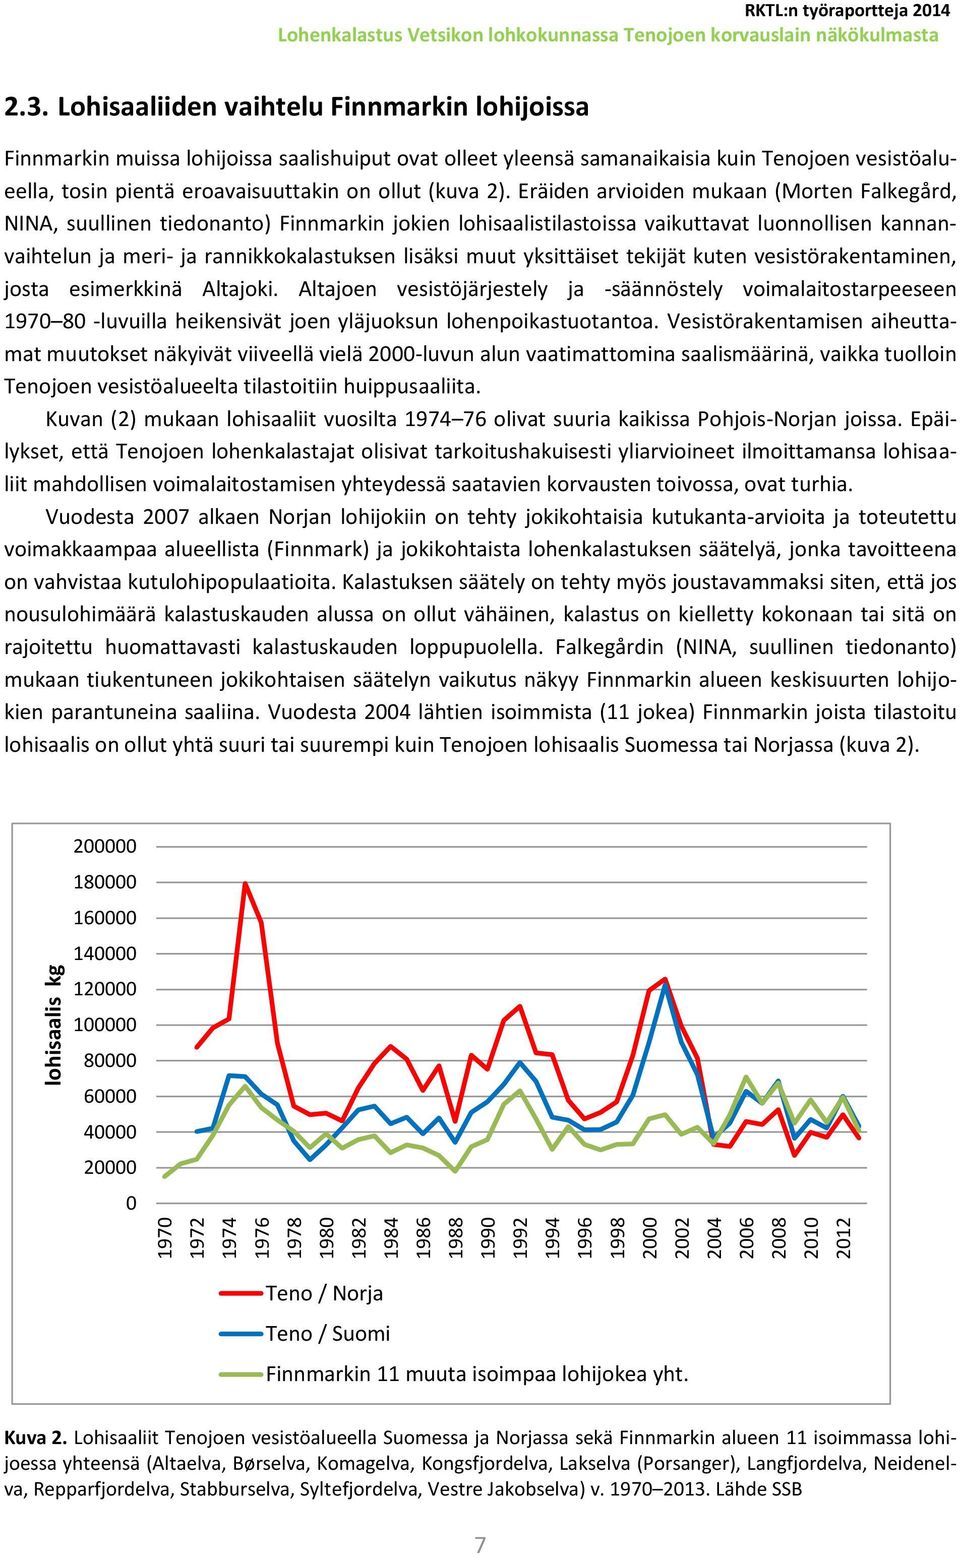 Eräiden arvioiden mukaan (Morten Falkegård, NINA, suullinen tiedonanto) Finnmarkin jokien lohisaalistilastoissa vaikuttavat luonnollisen kannanvaihtelun ja meri- ja rannikkokalastuksen lisäksi muut